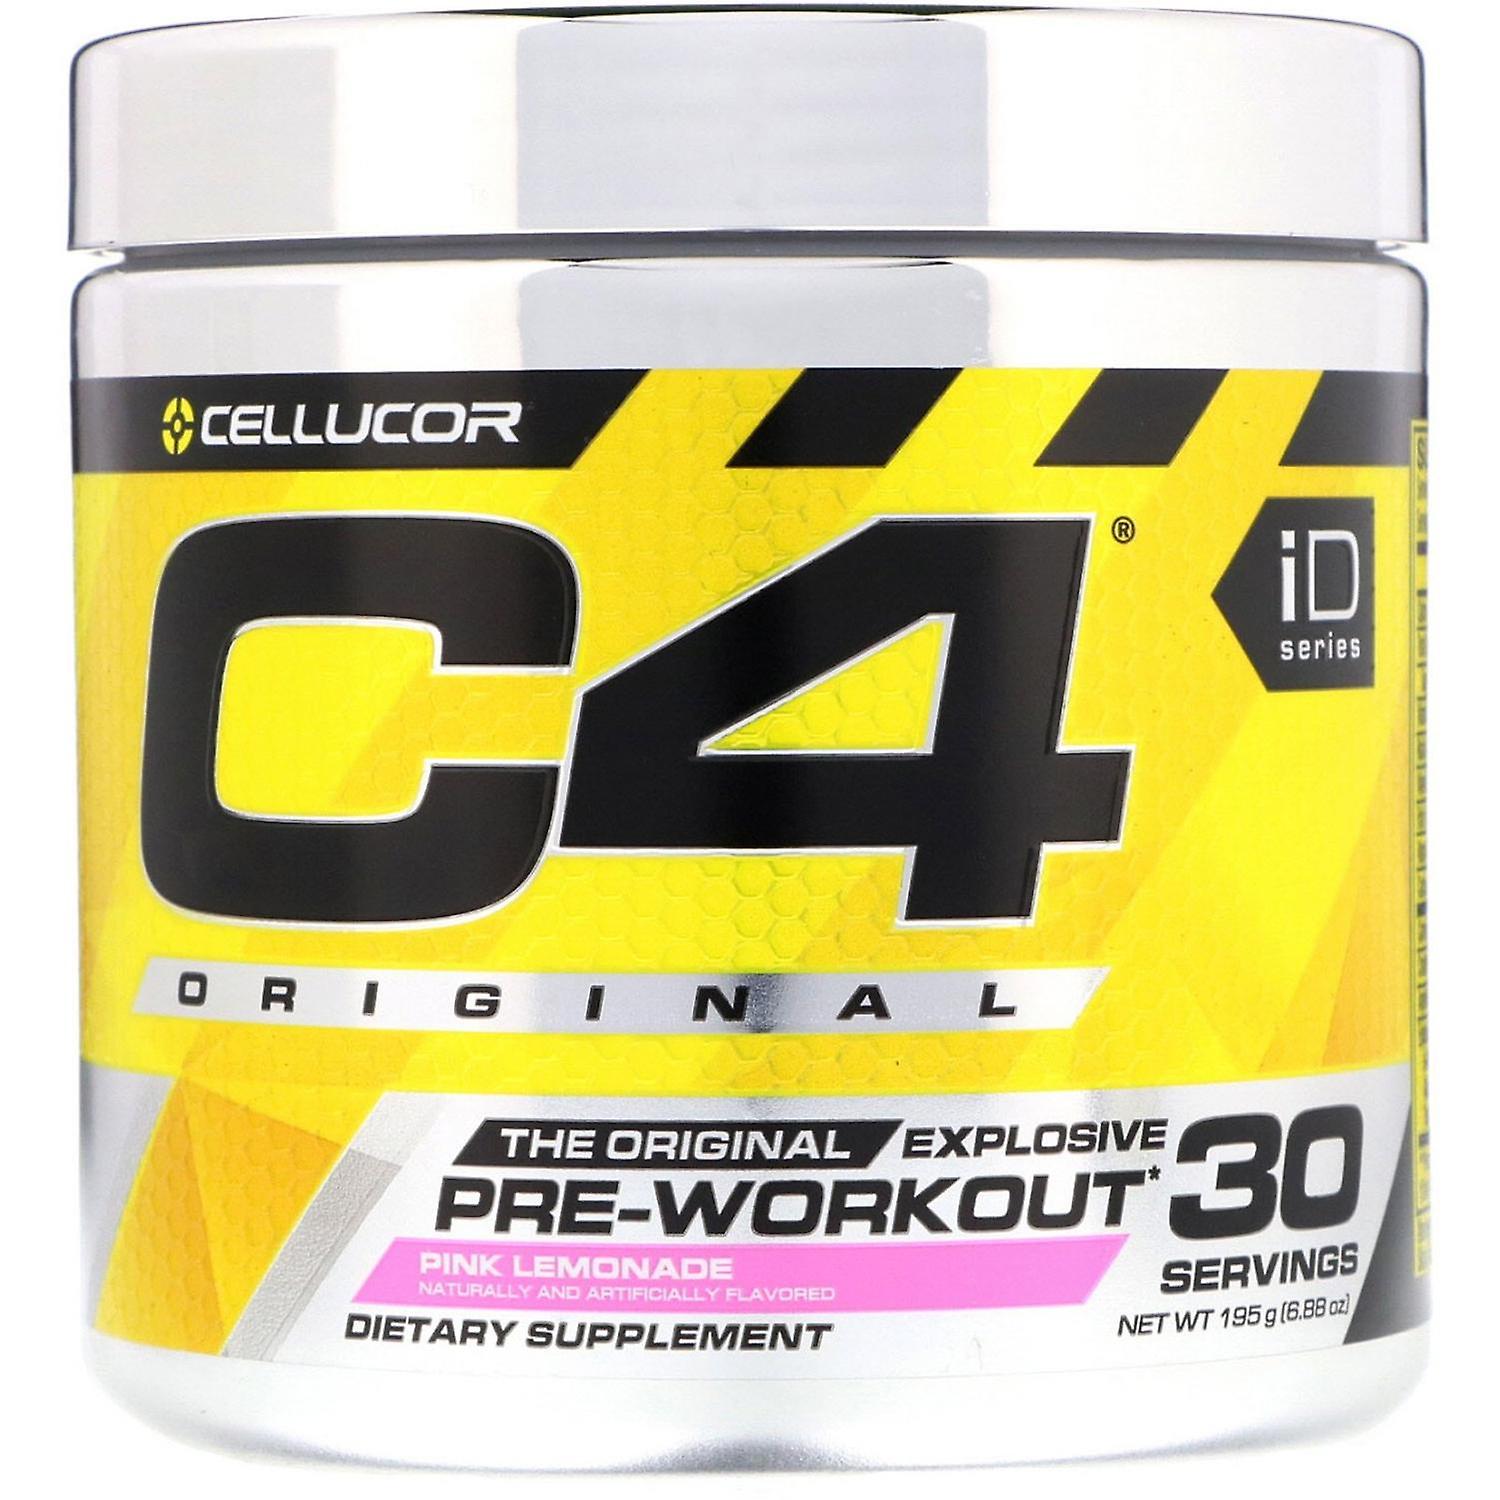 Cellucor C4 Original Pre-Workout 30 Servings